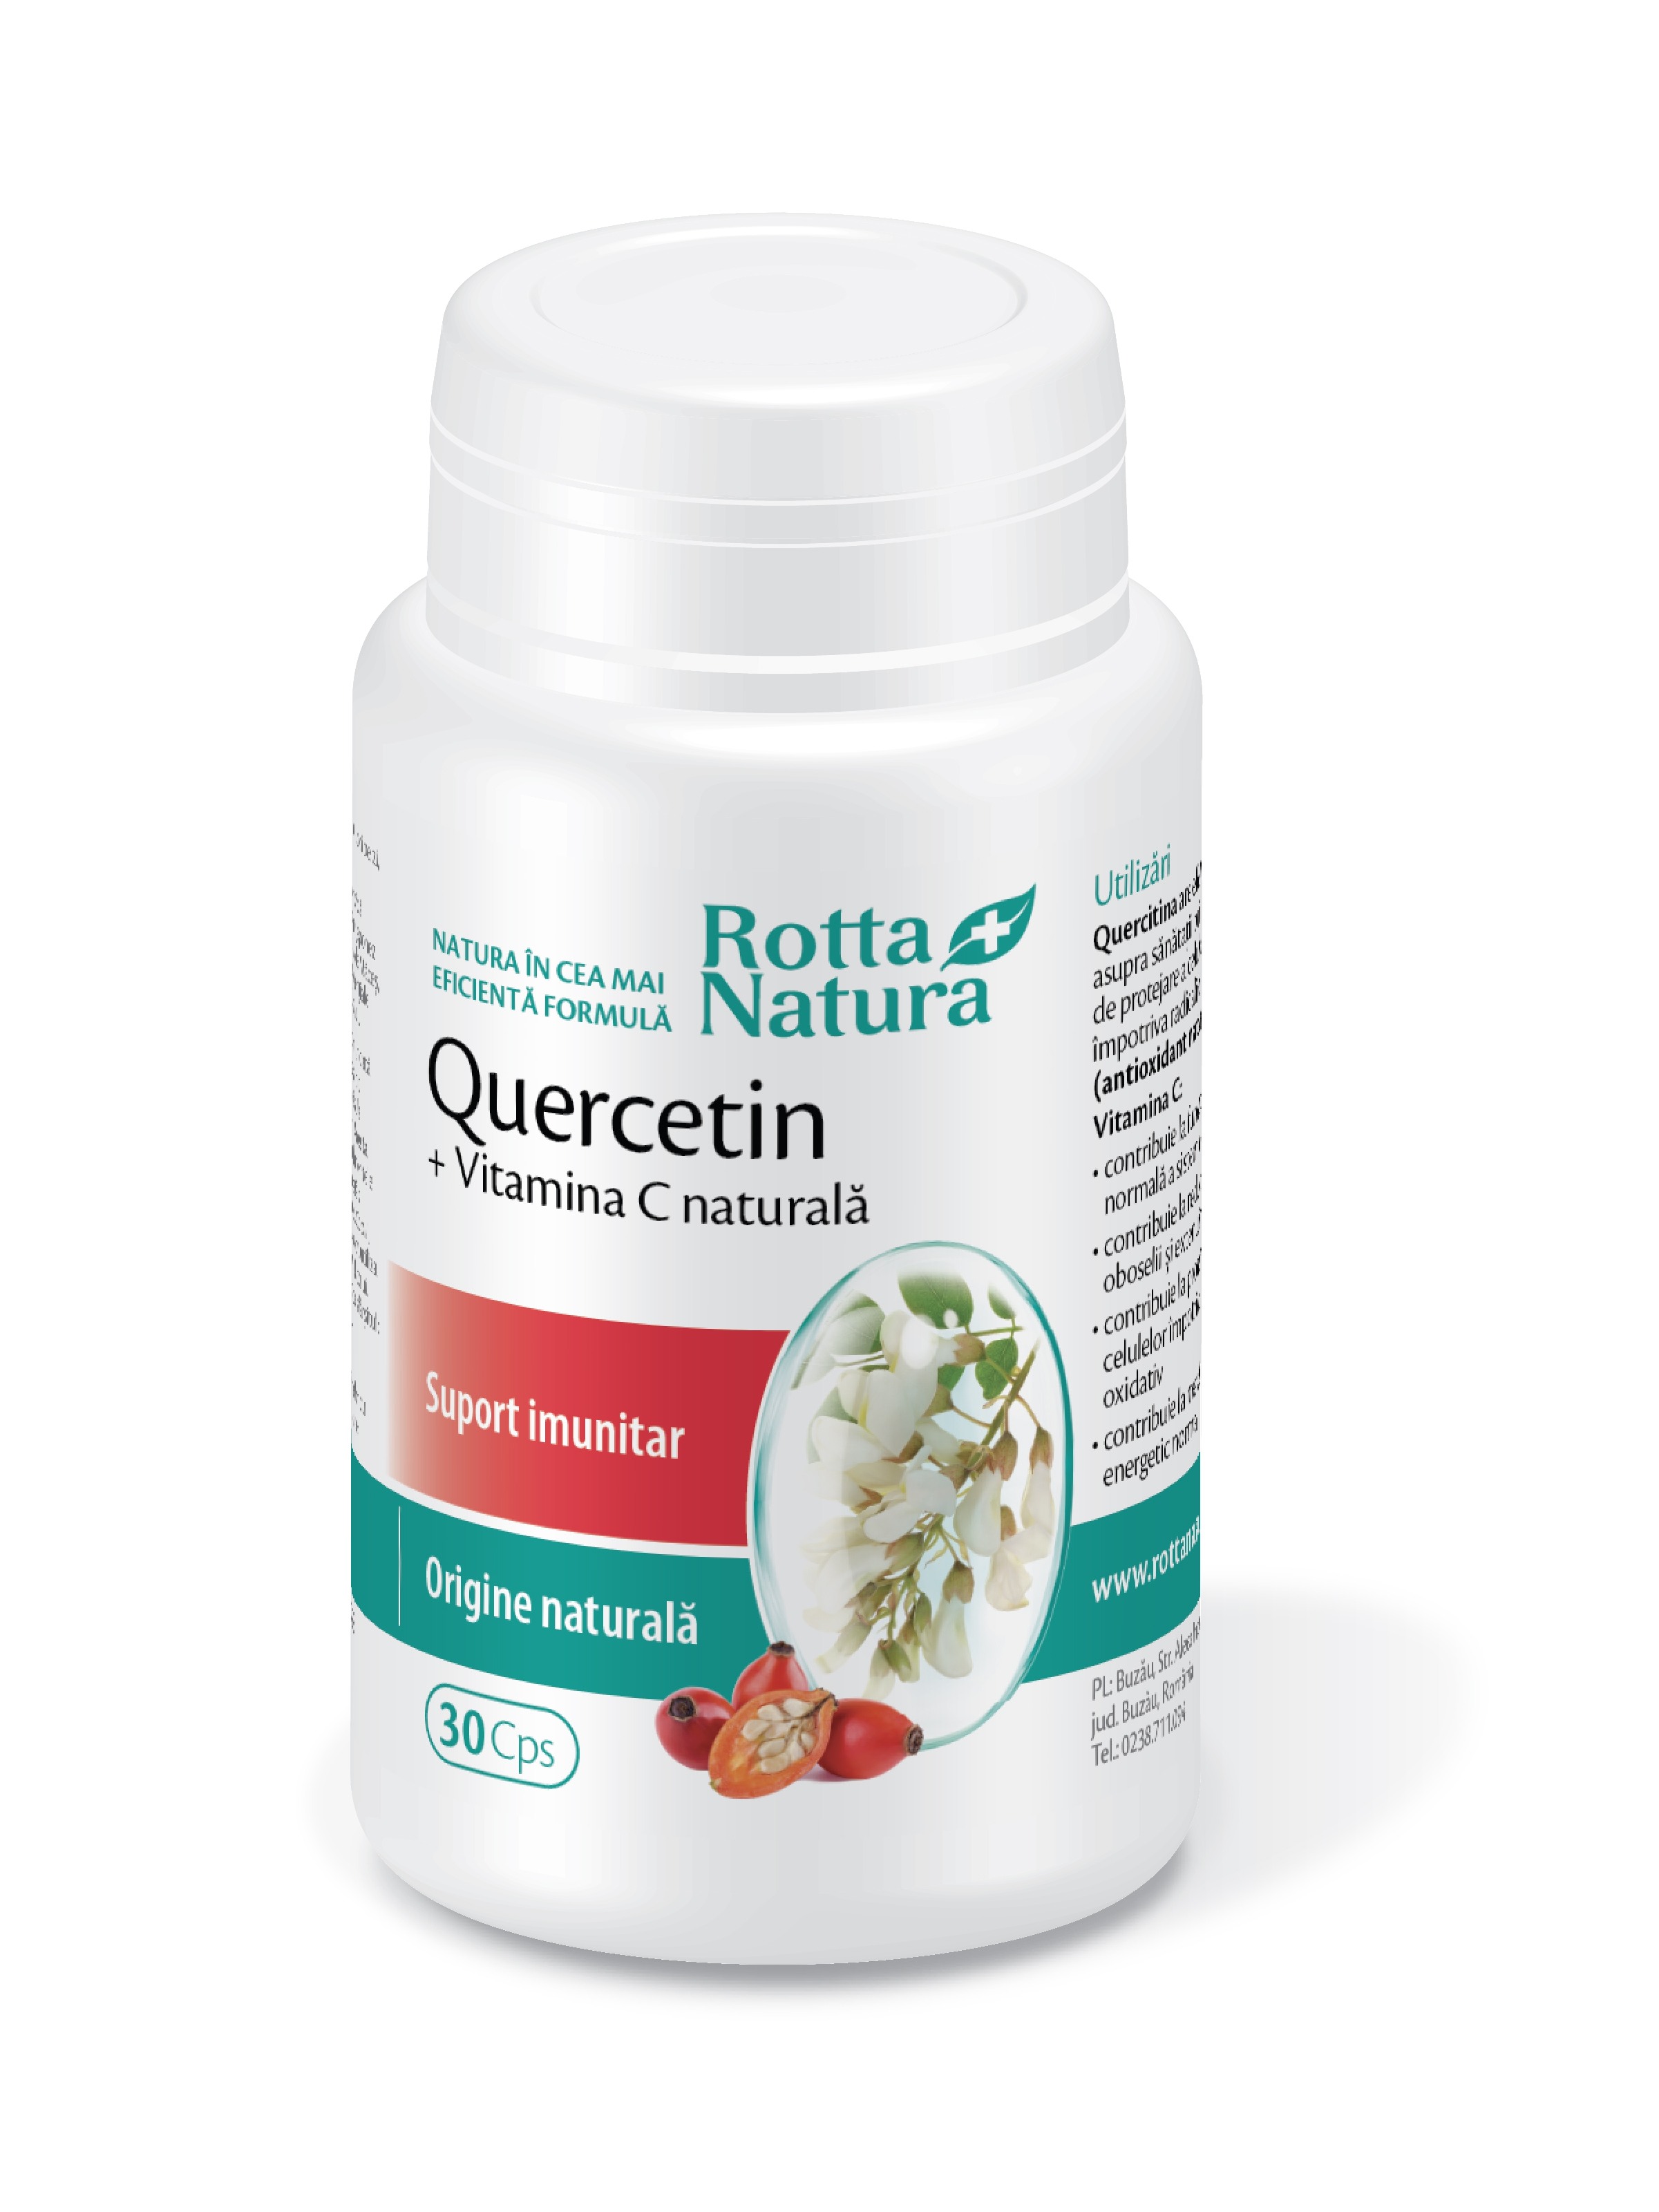 Imunitate - Quercetin + Vitamina C naturală, 30 capsule, Rotta Natura, sinapis.ro